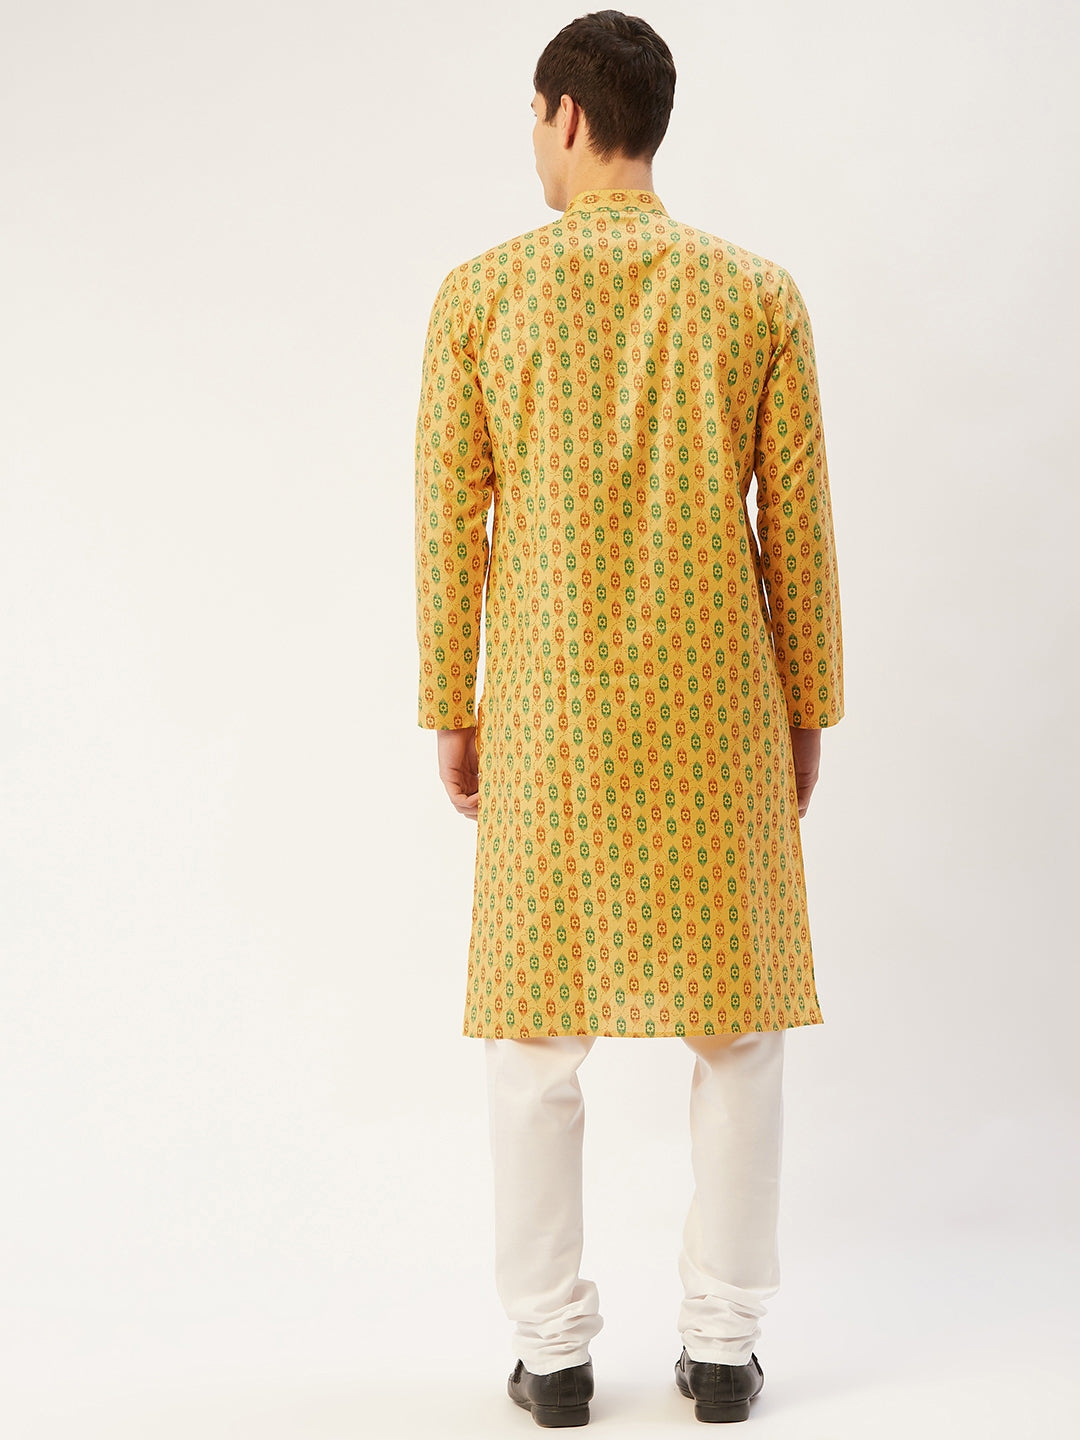 Men's Mustard Cotton Ikat printed kurta Only( KO 651 Mustard ) - Virat Fashions